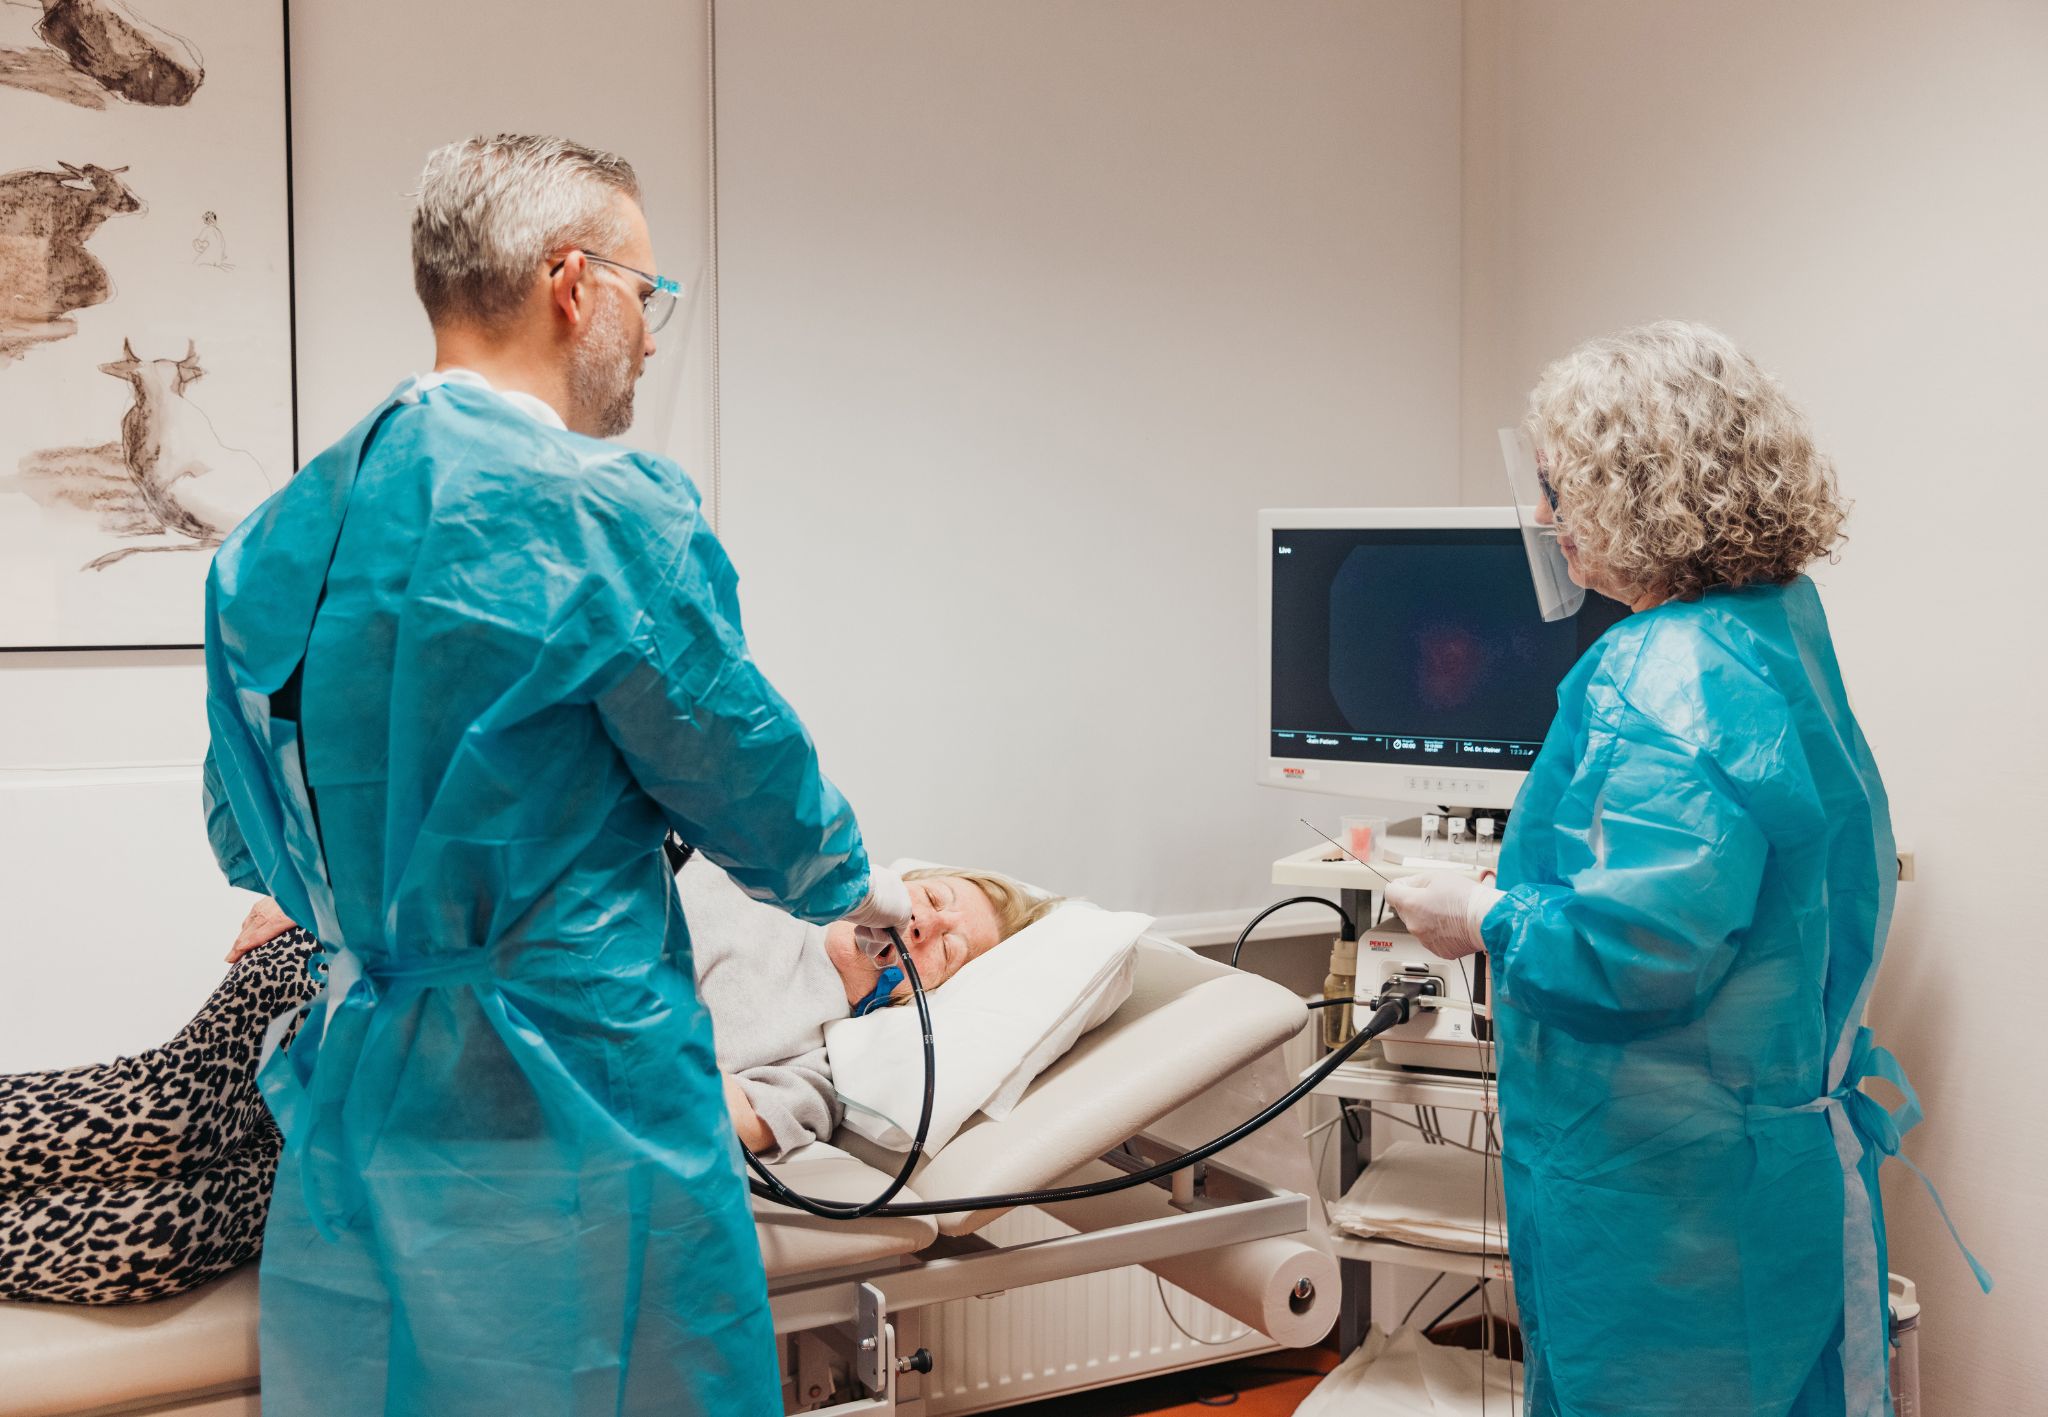 Entdecken Sie die Gastrokopie mit Dr. Klaus Steiner und seinem Fachteam – modernste Technik für präzise Magen-Darm-Diagnostik und kompetente Betreuung für Ihre Gesundheit in Salzburg.